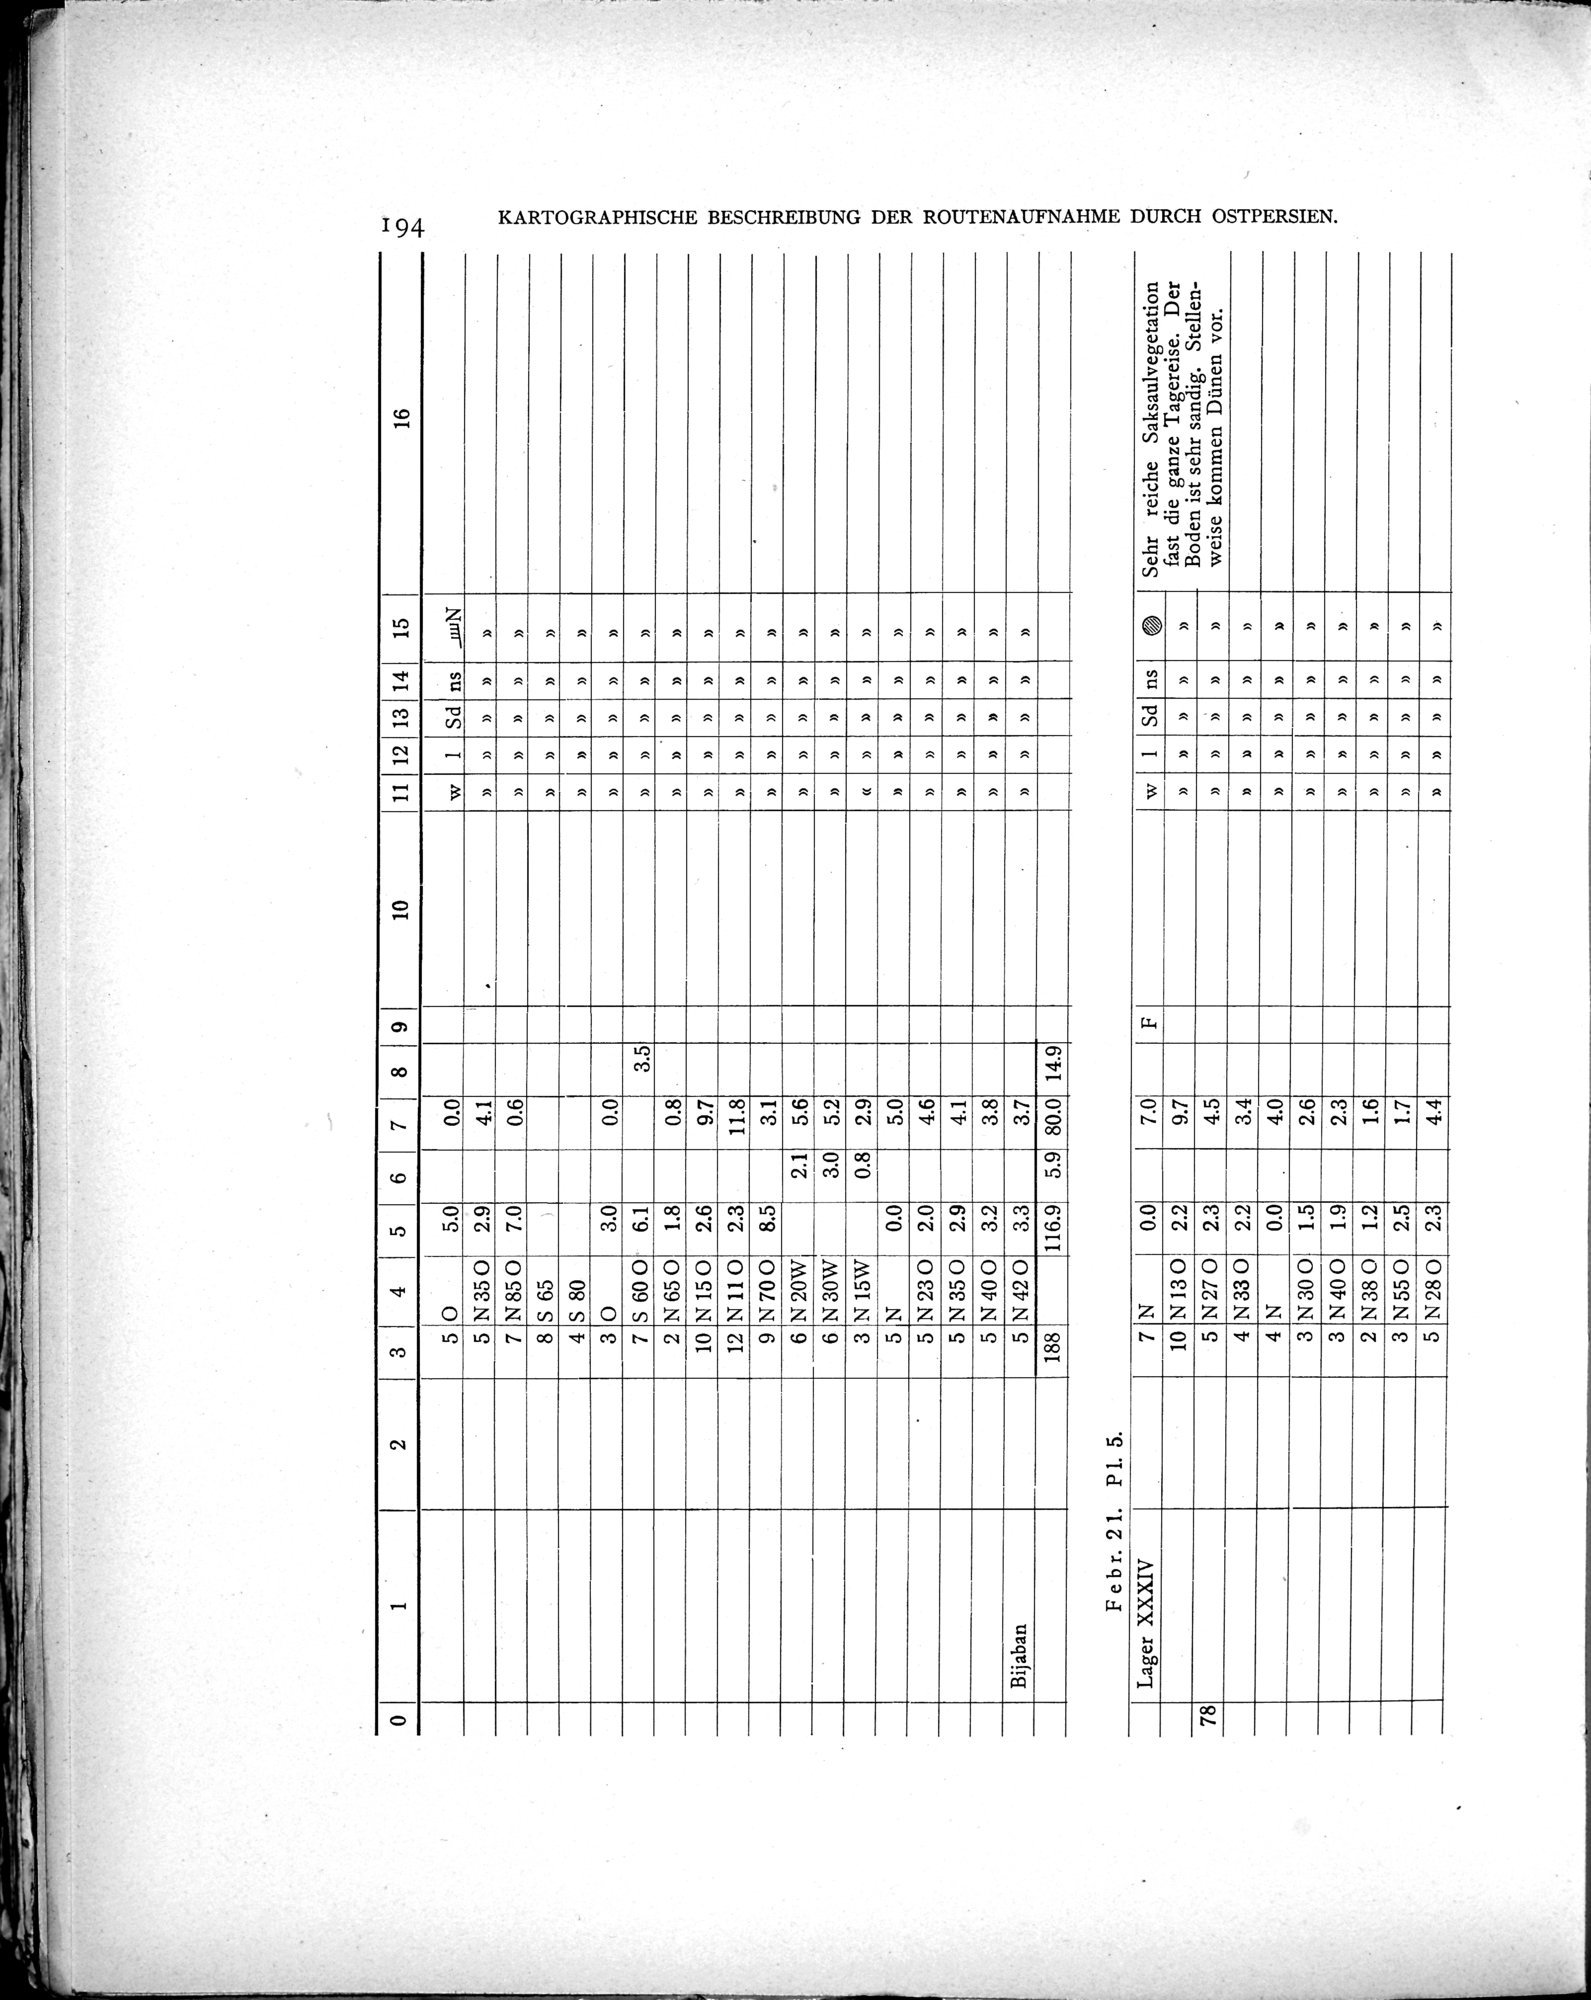 Eine Routenaufnahme durch Ostpersien : vol.2 / Page 264 (Grayscale High Resolution Image)